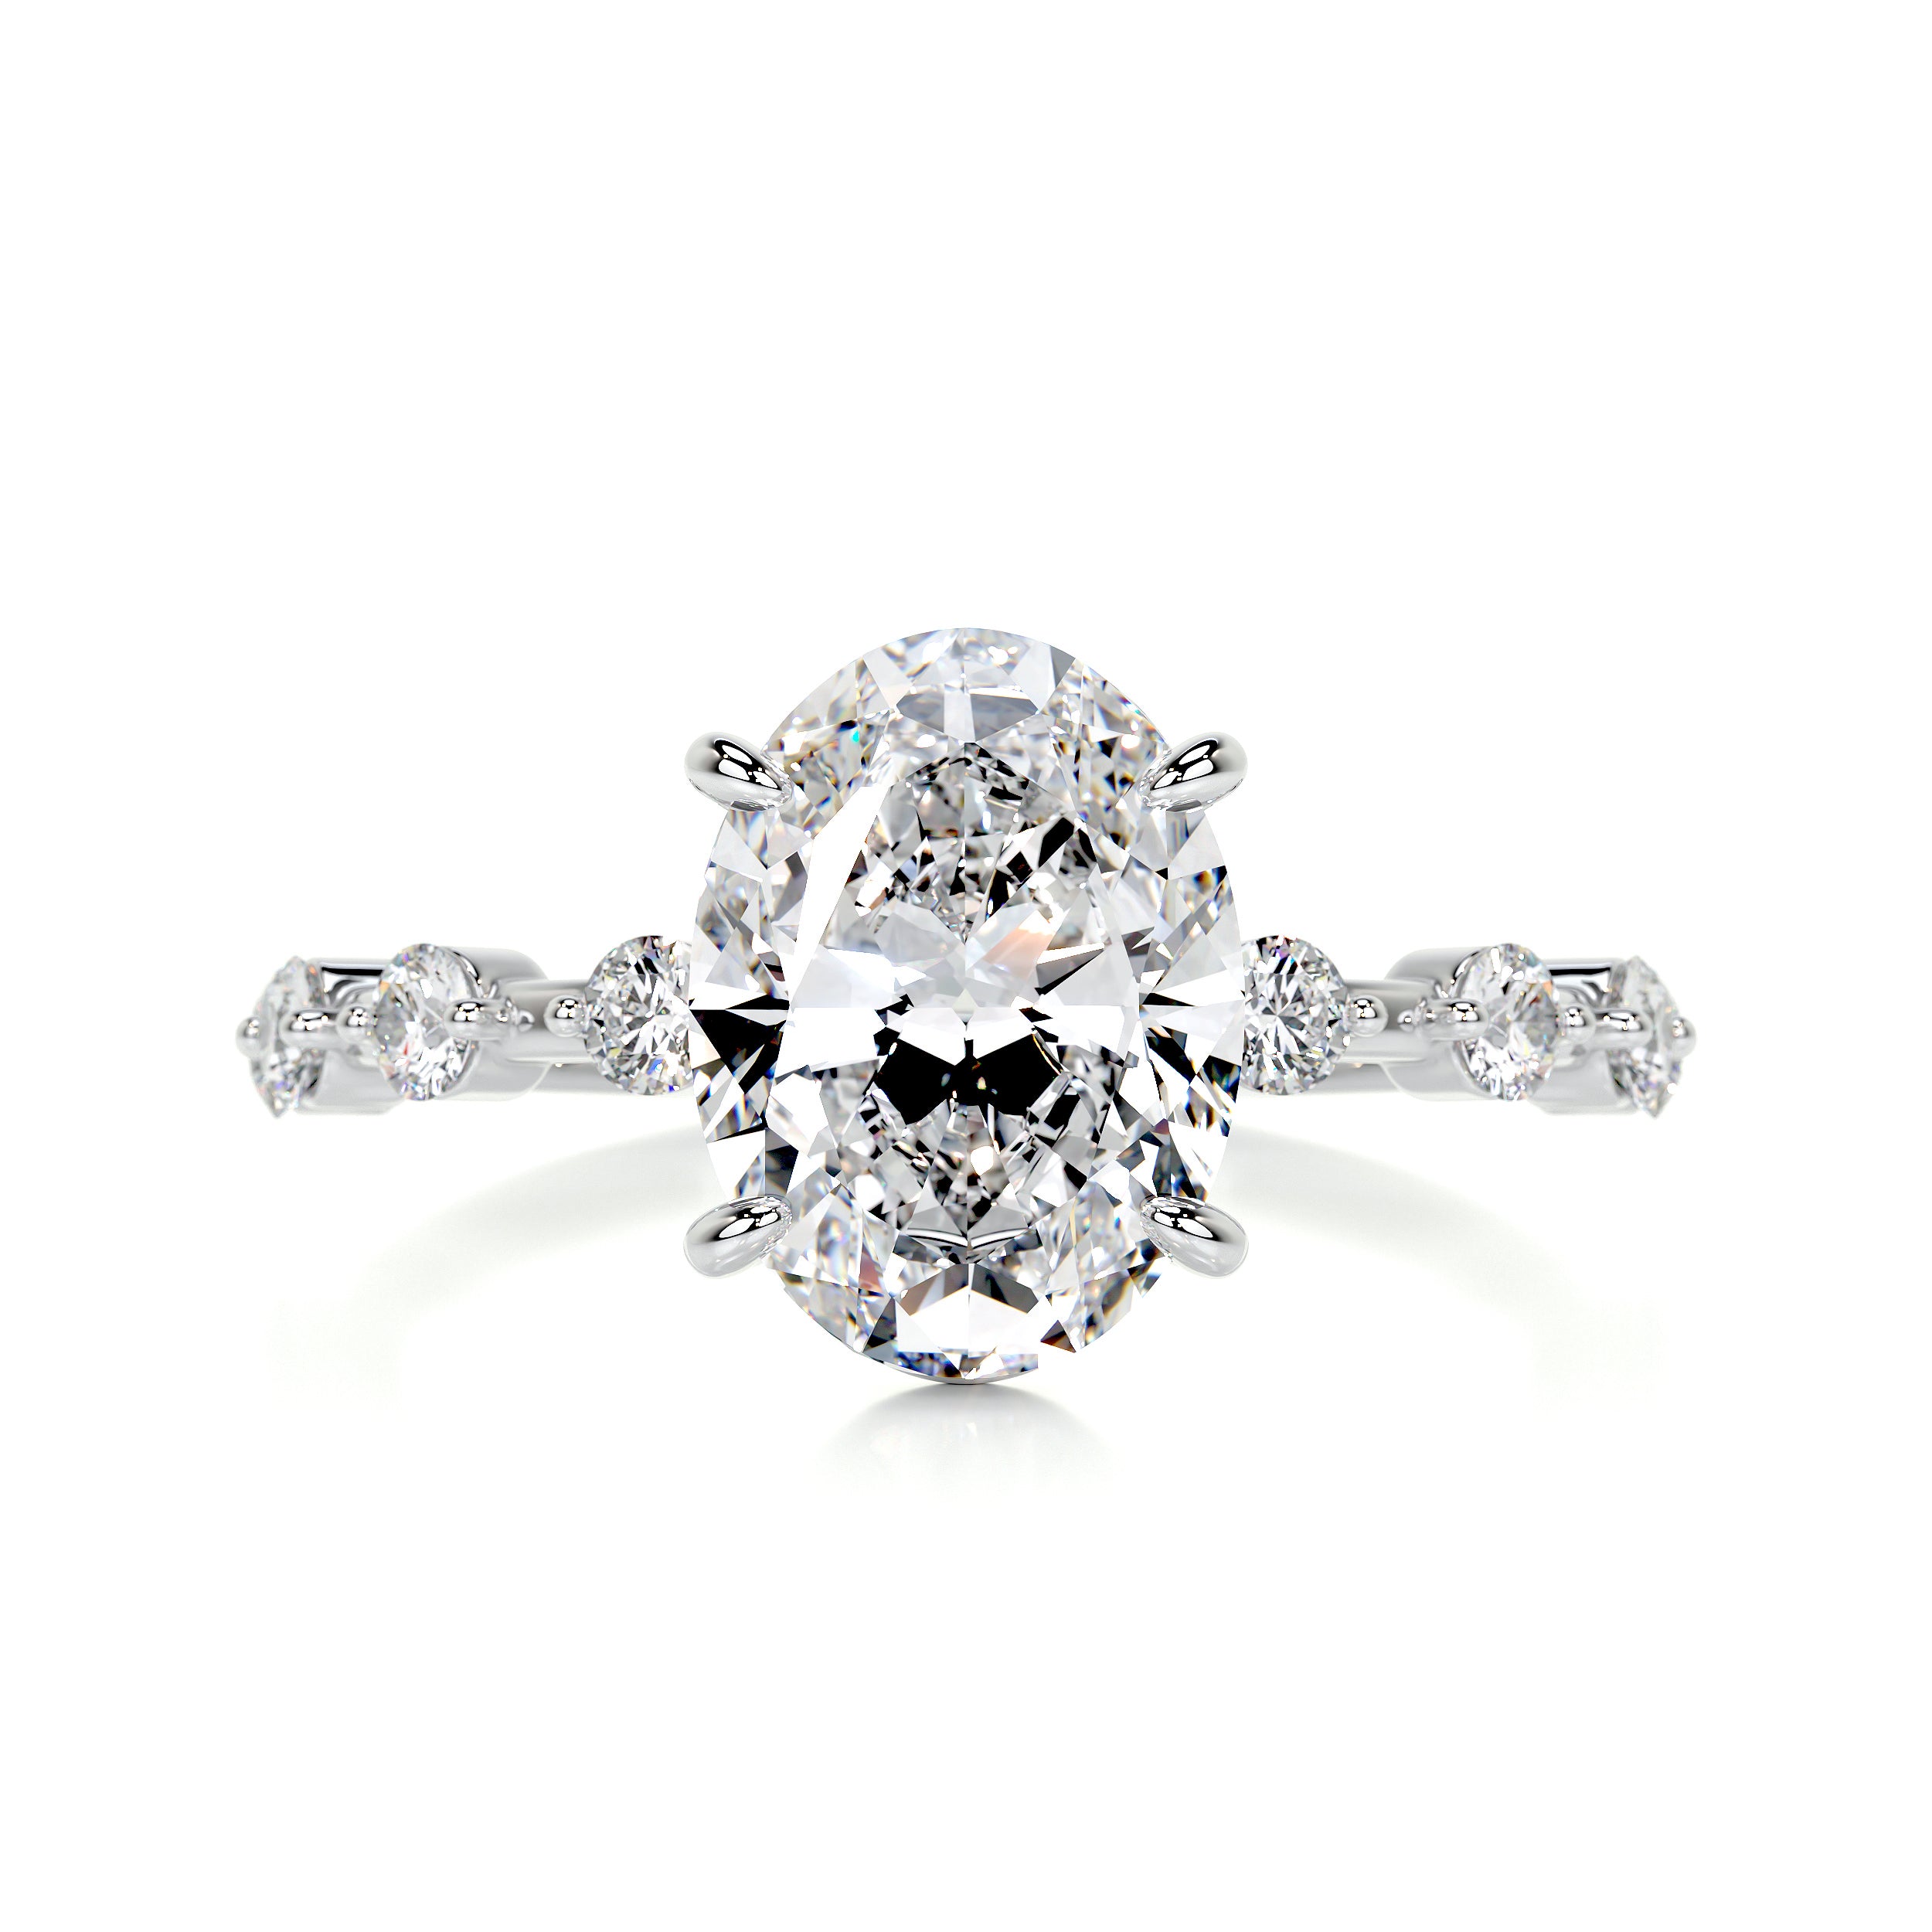 Bell Diamond Engagement Ring -14K White Gold